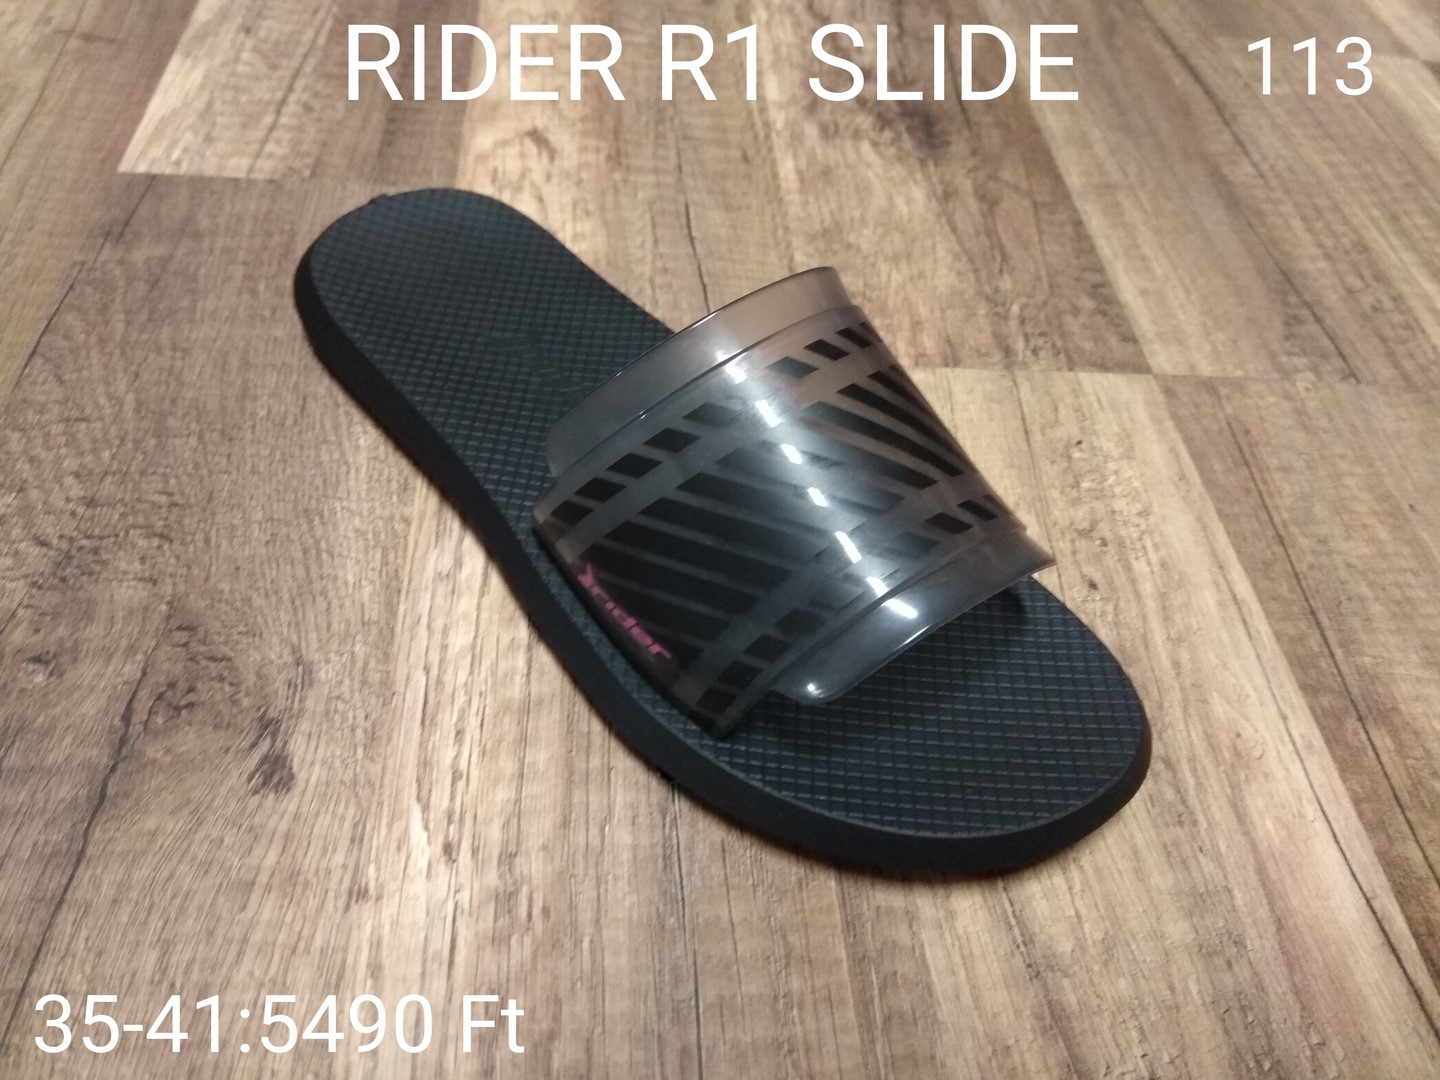 RIDER R1 SLIDE